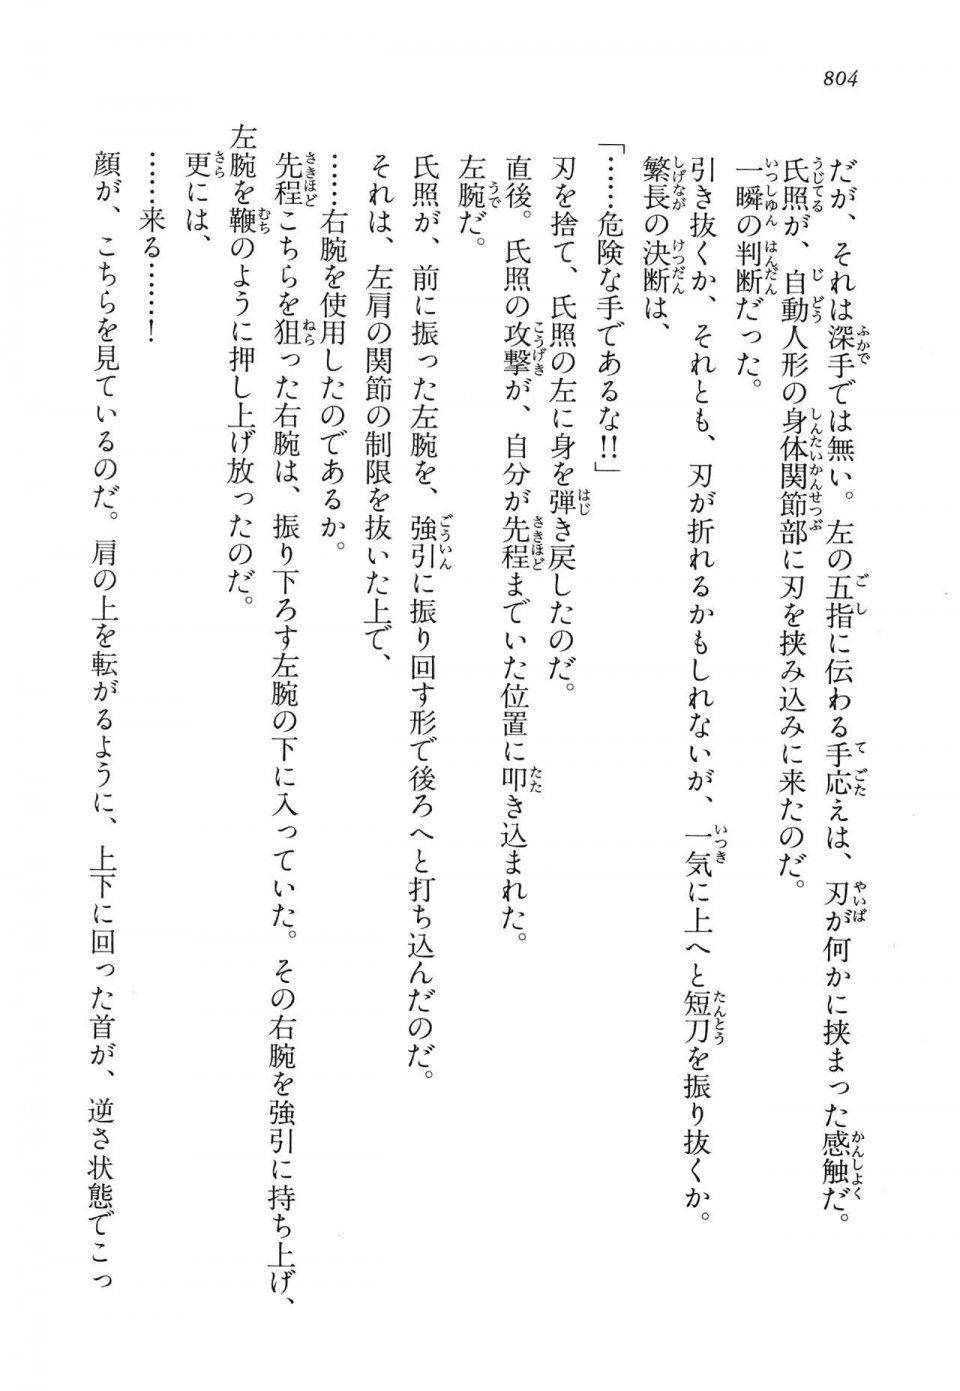 Kyoukai Senjou no Horizon LN Vol 14(6B) - Photo #804